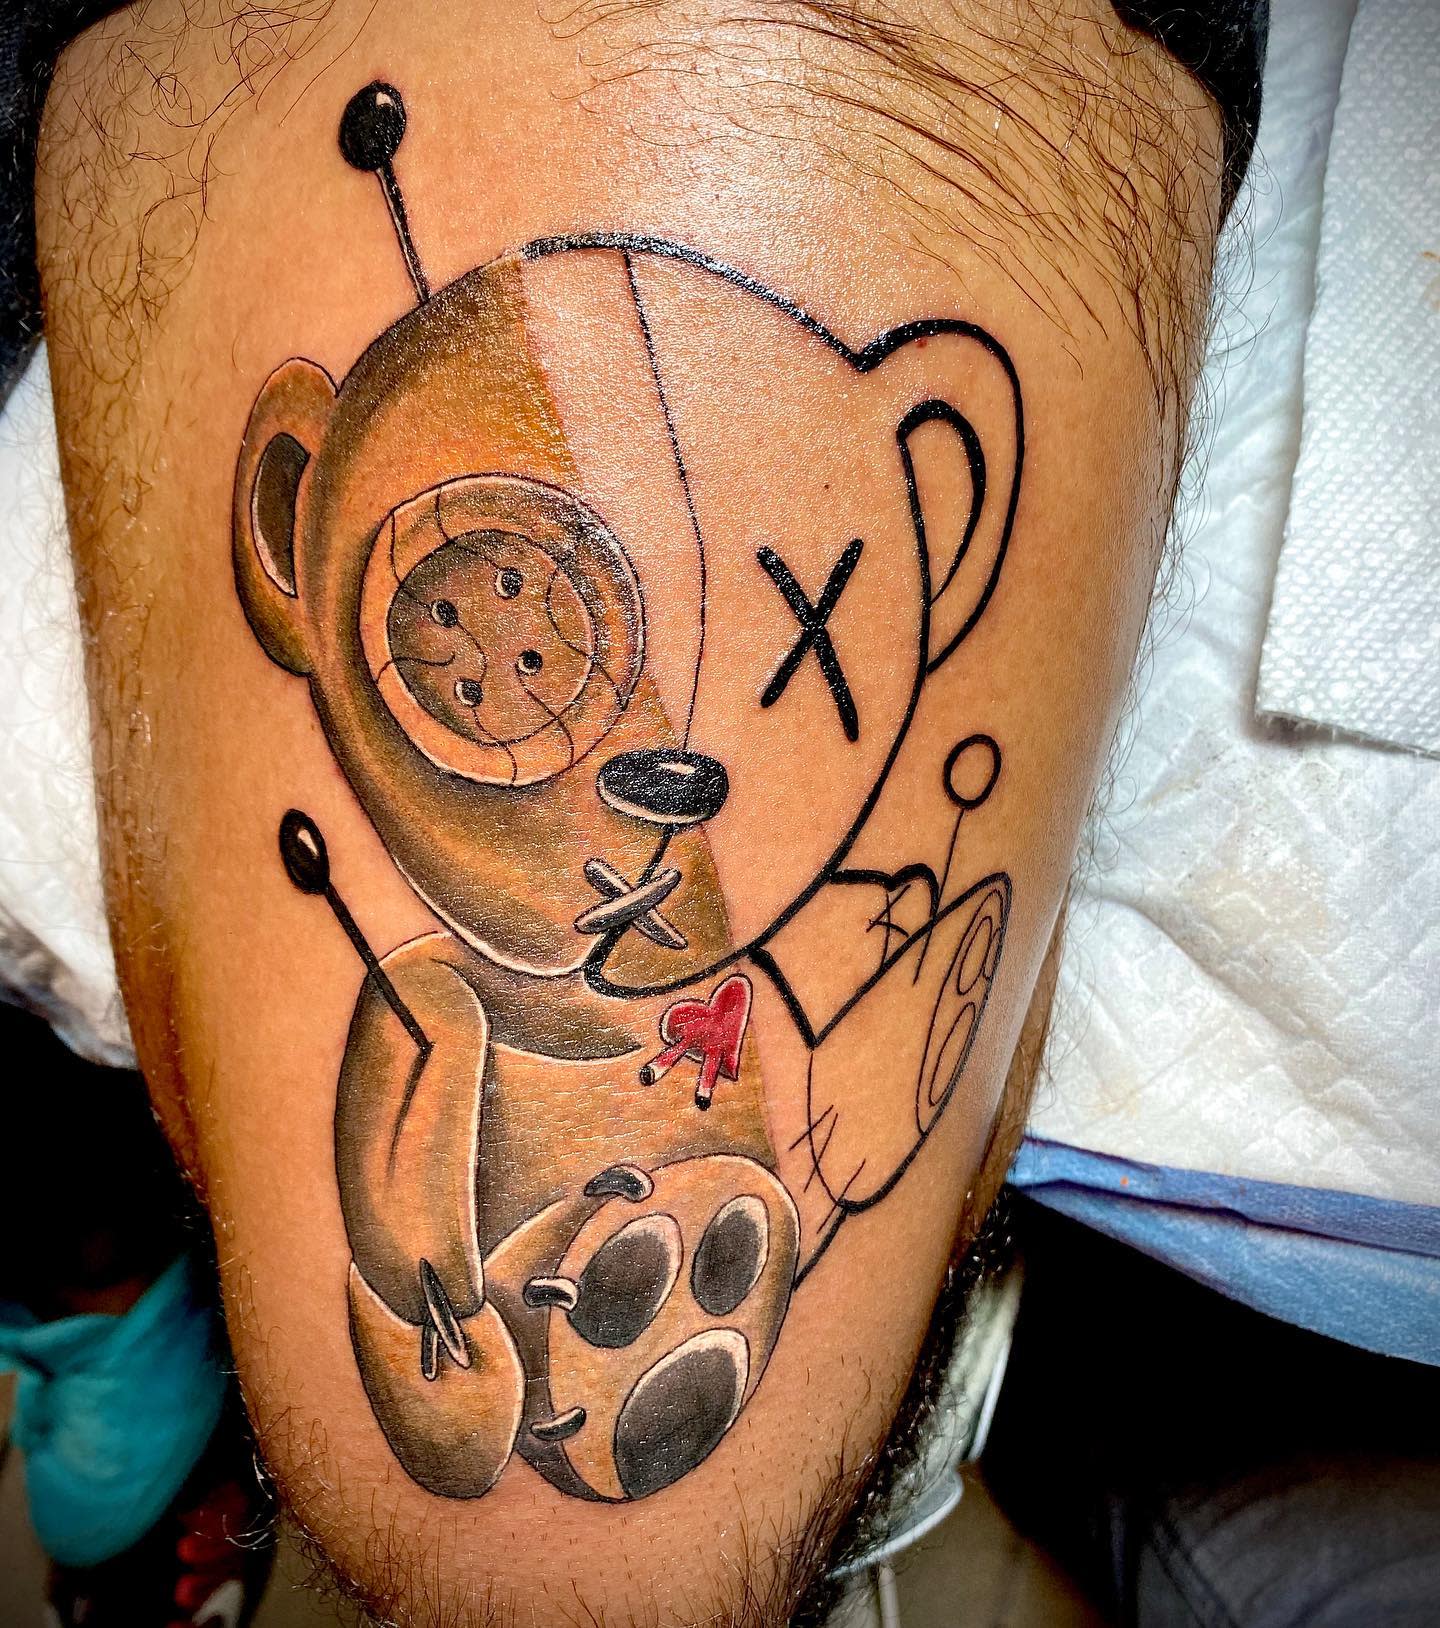 Broken Teddy Bear Tattoo -elcayink